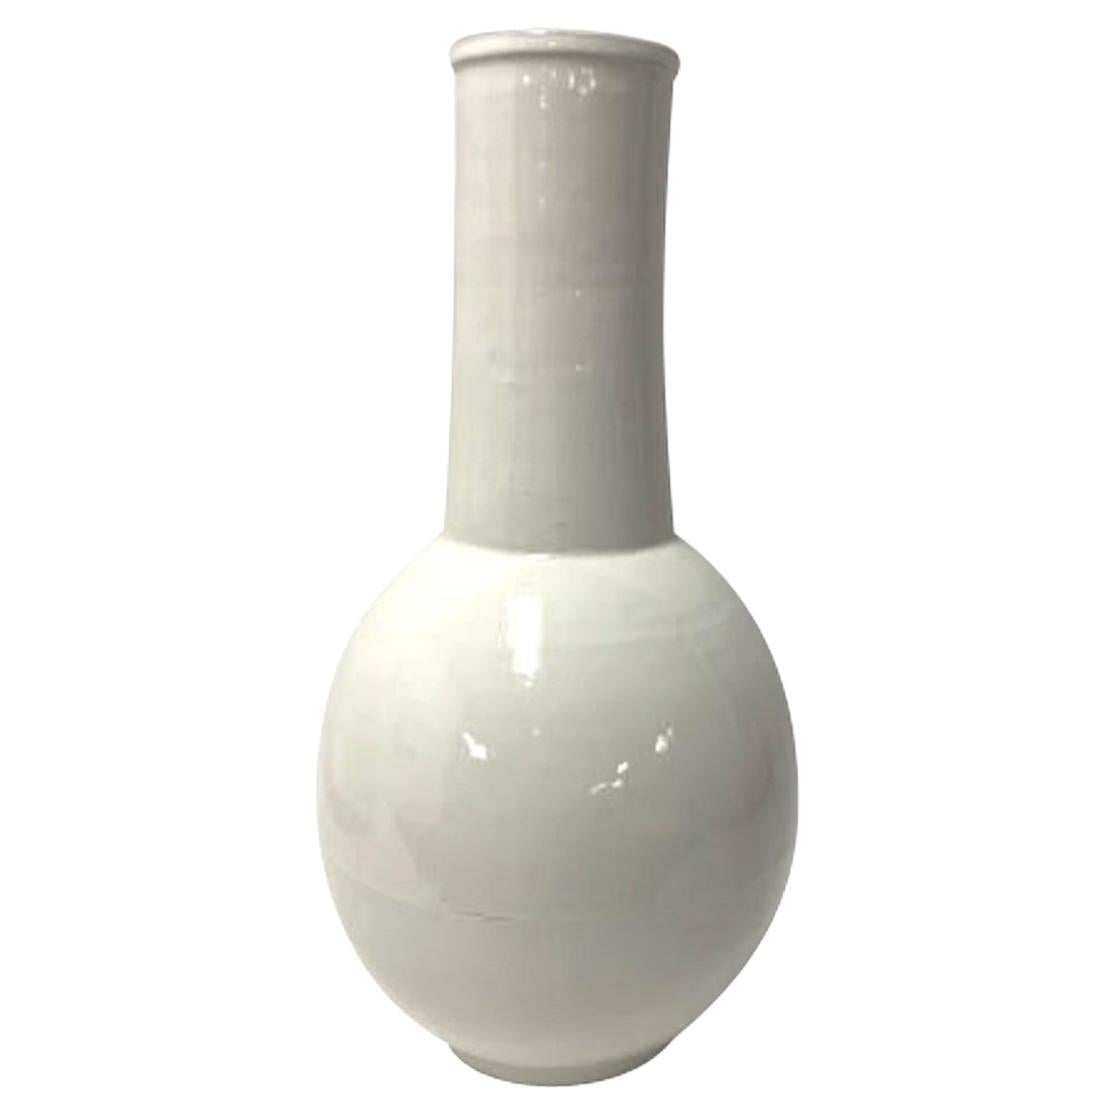 ceramique chinoise contemporaine